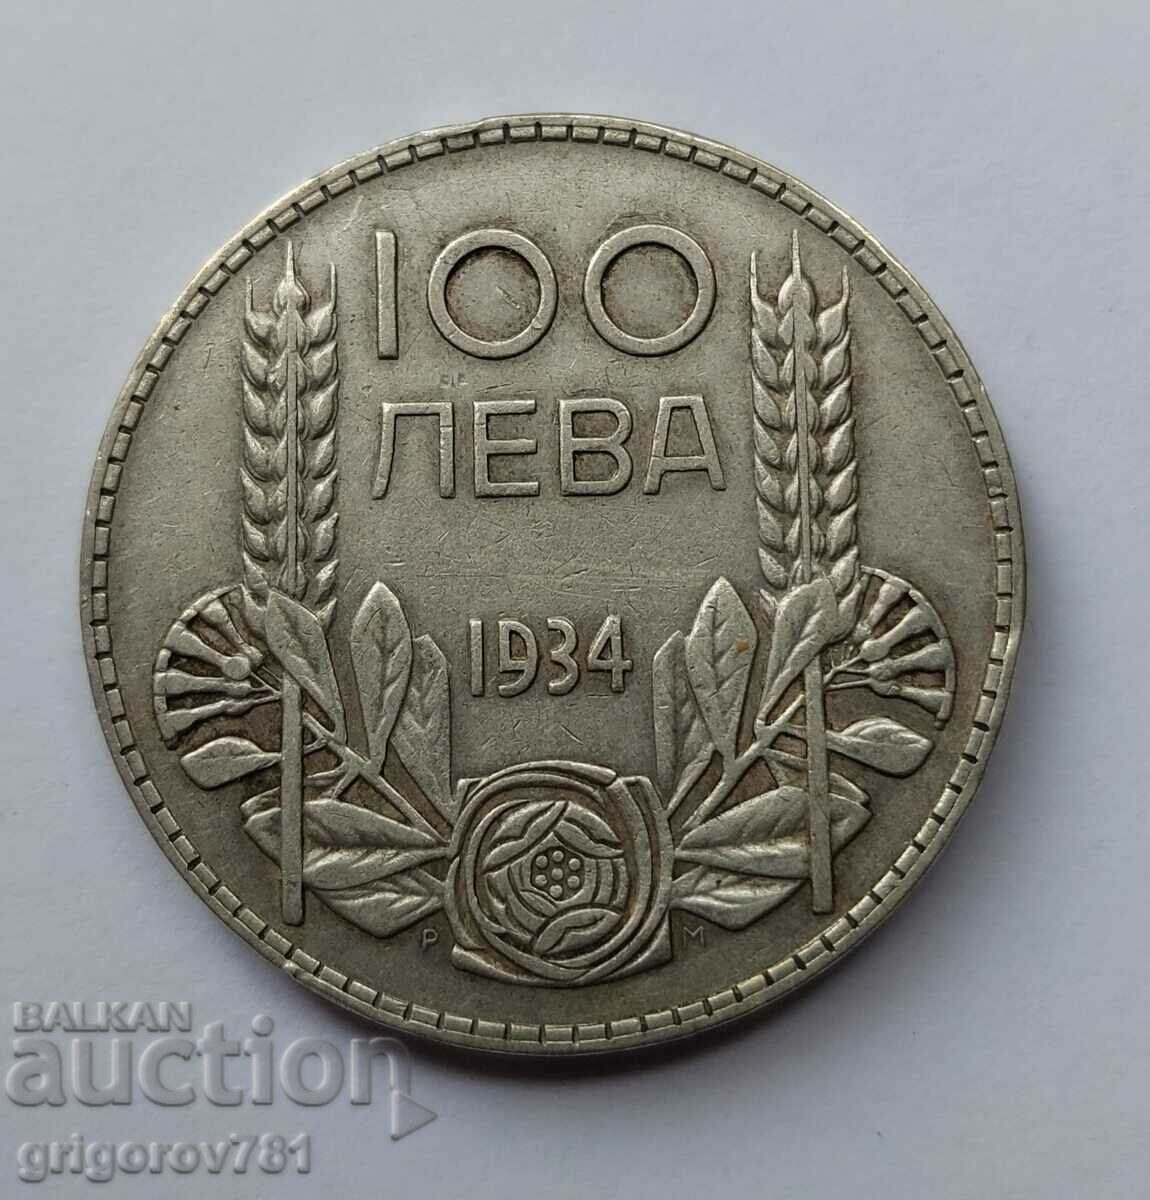 100 leva silver Bulgaria 1934 - silver coin #41